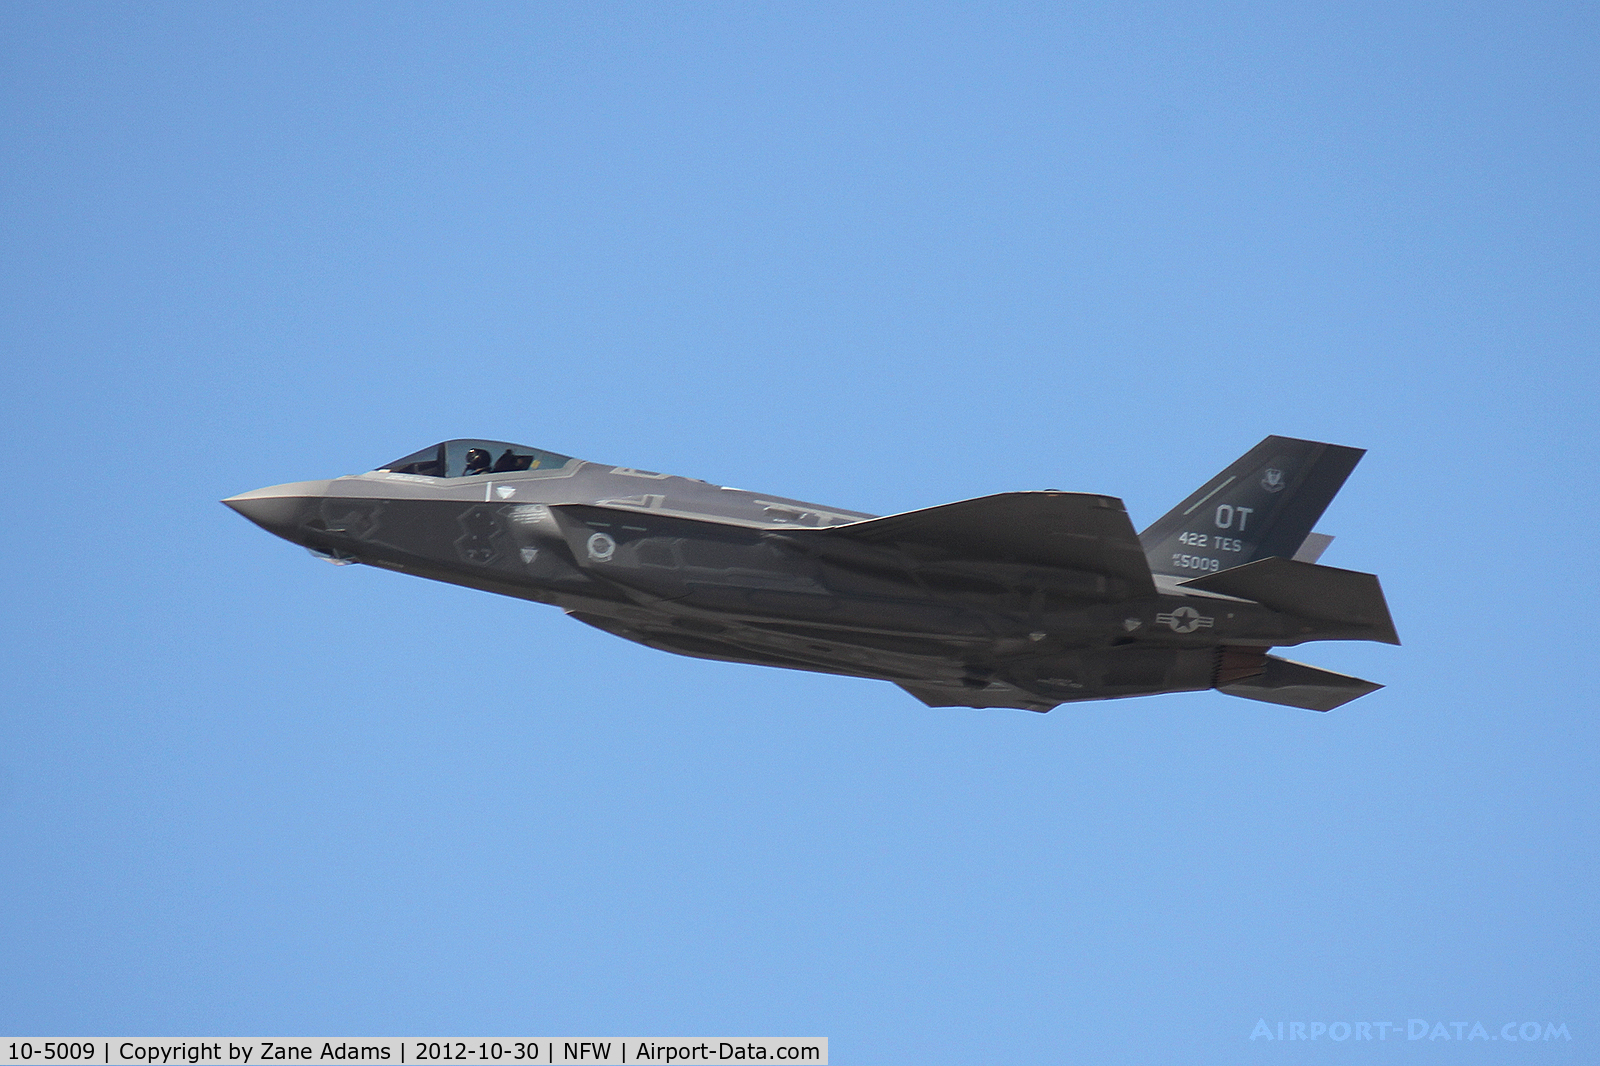 10-5009, 2012 Lockheed Martin F-35A Lightning II C/N AF-21, Lockheed F-35A departing NAS Fort Worth